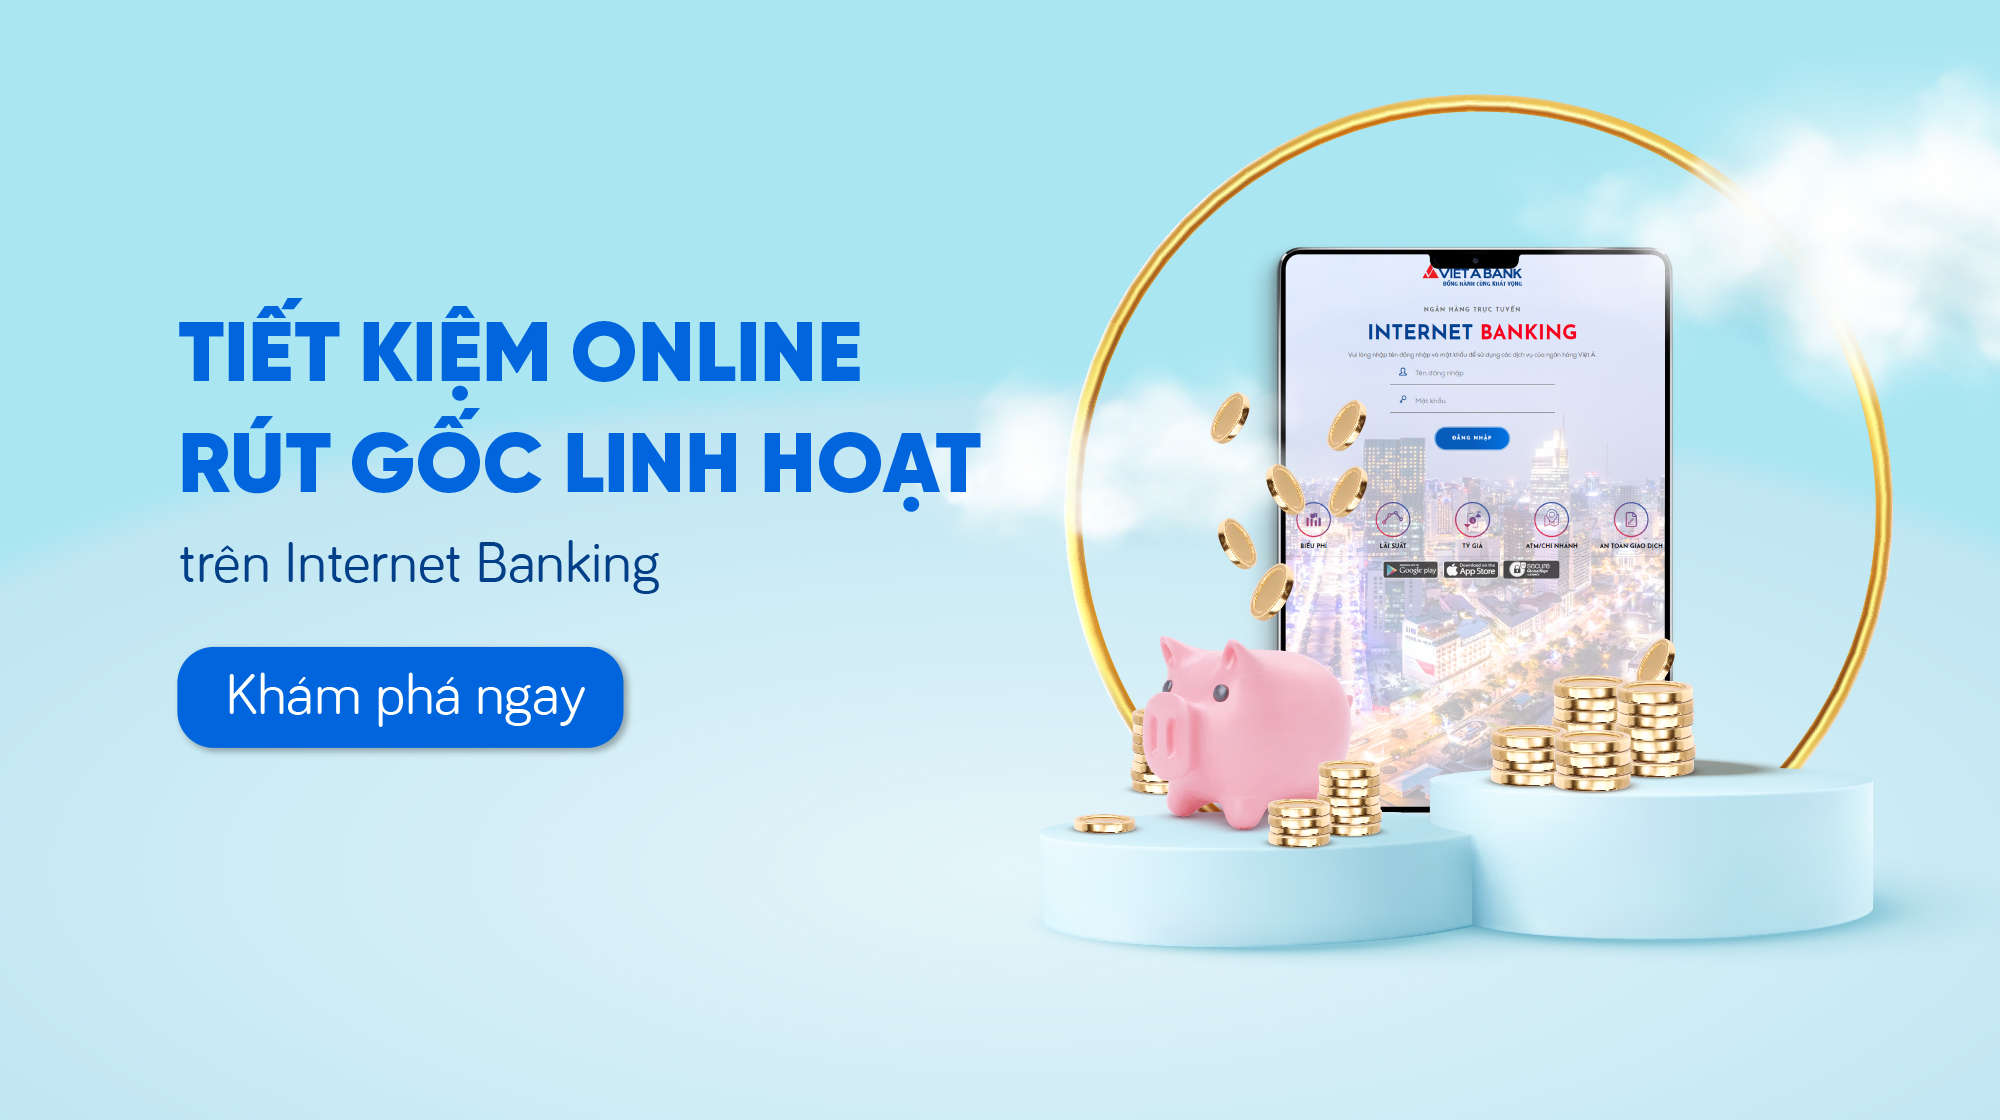 Hình thức rút gốc một phần tiền gửi tiết kiệm online trên Internet Banking